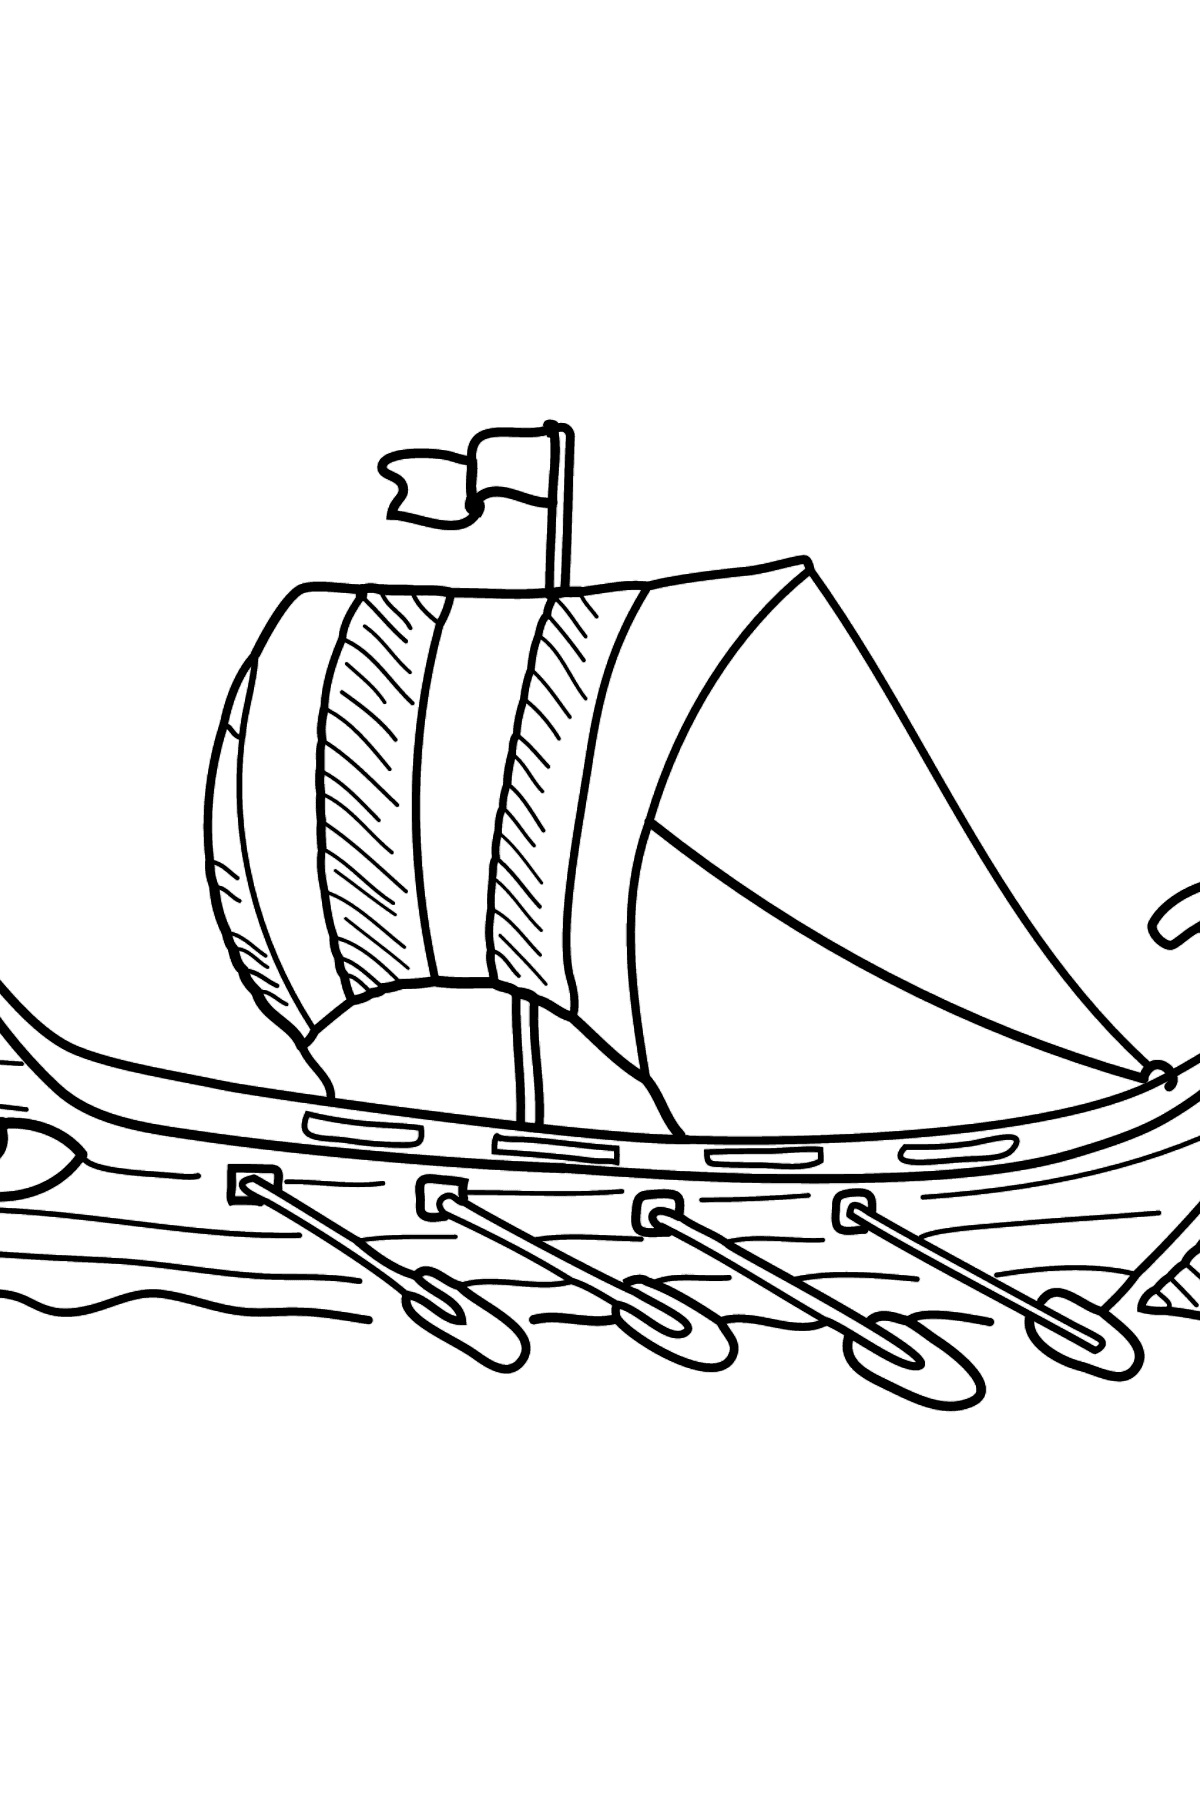 Desenho de barco a remo no rio para colorir - Imagens para Colorir para Crianças